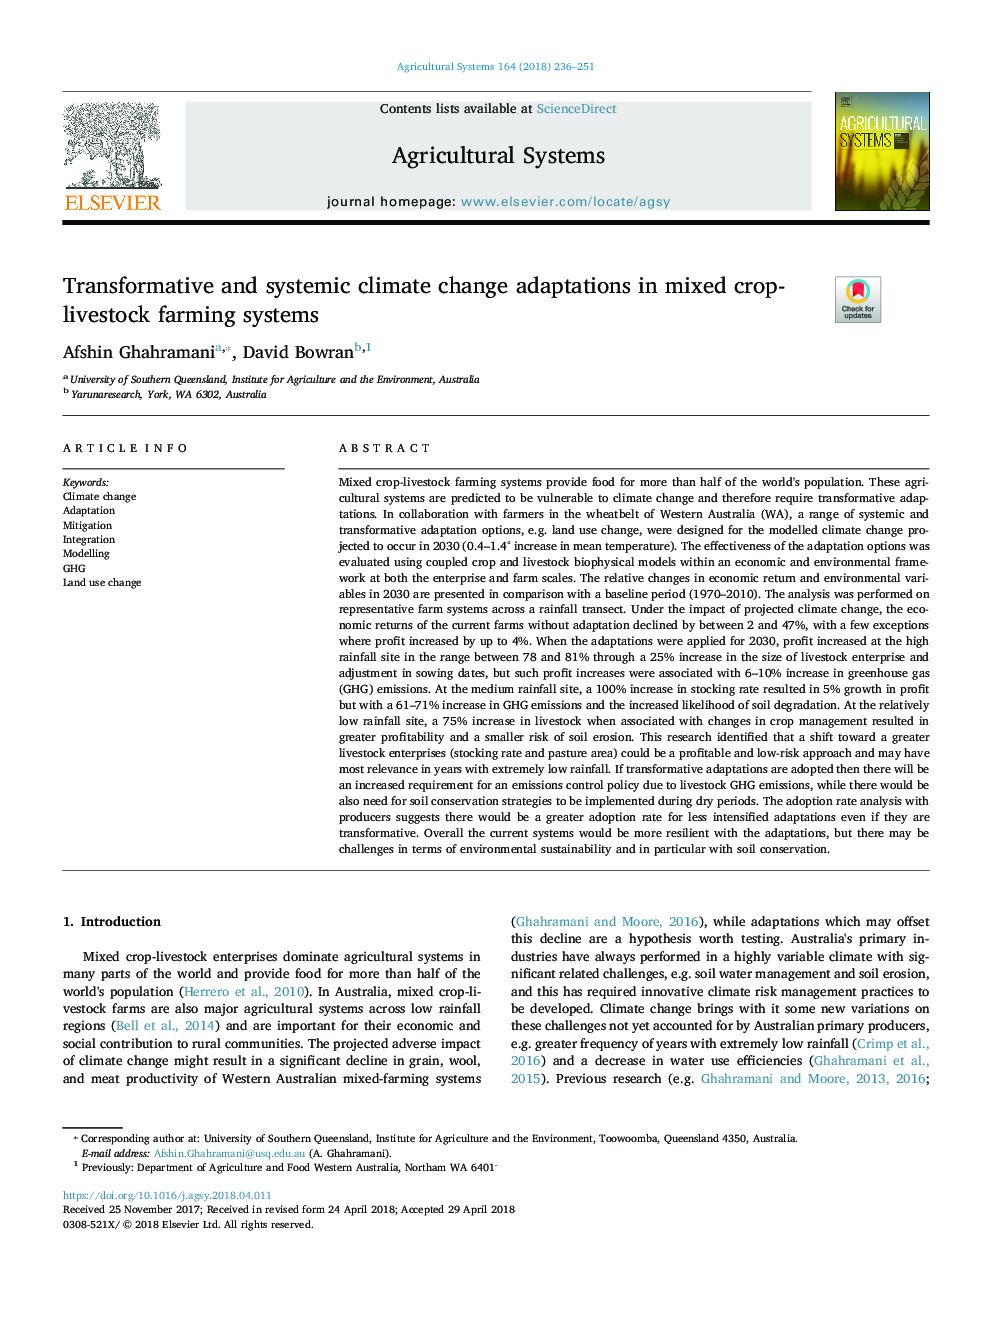 تغییرات جغرافیایی و تغییرات جغرافیایی در سیستم های کشاورزی دامداری 